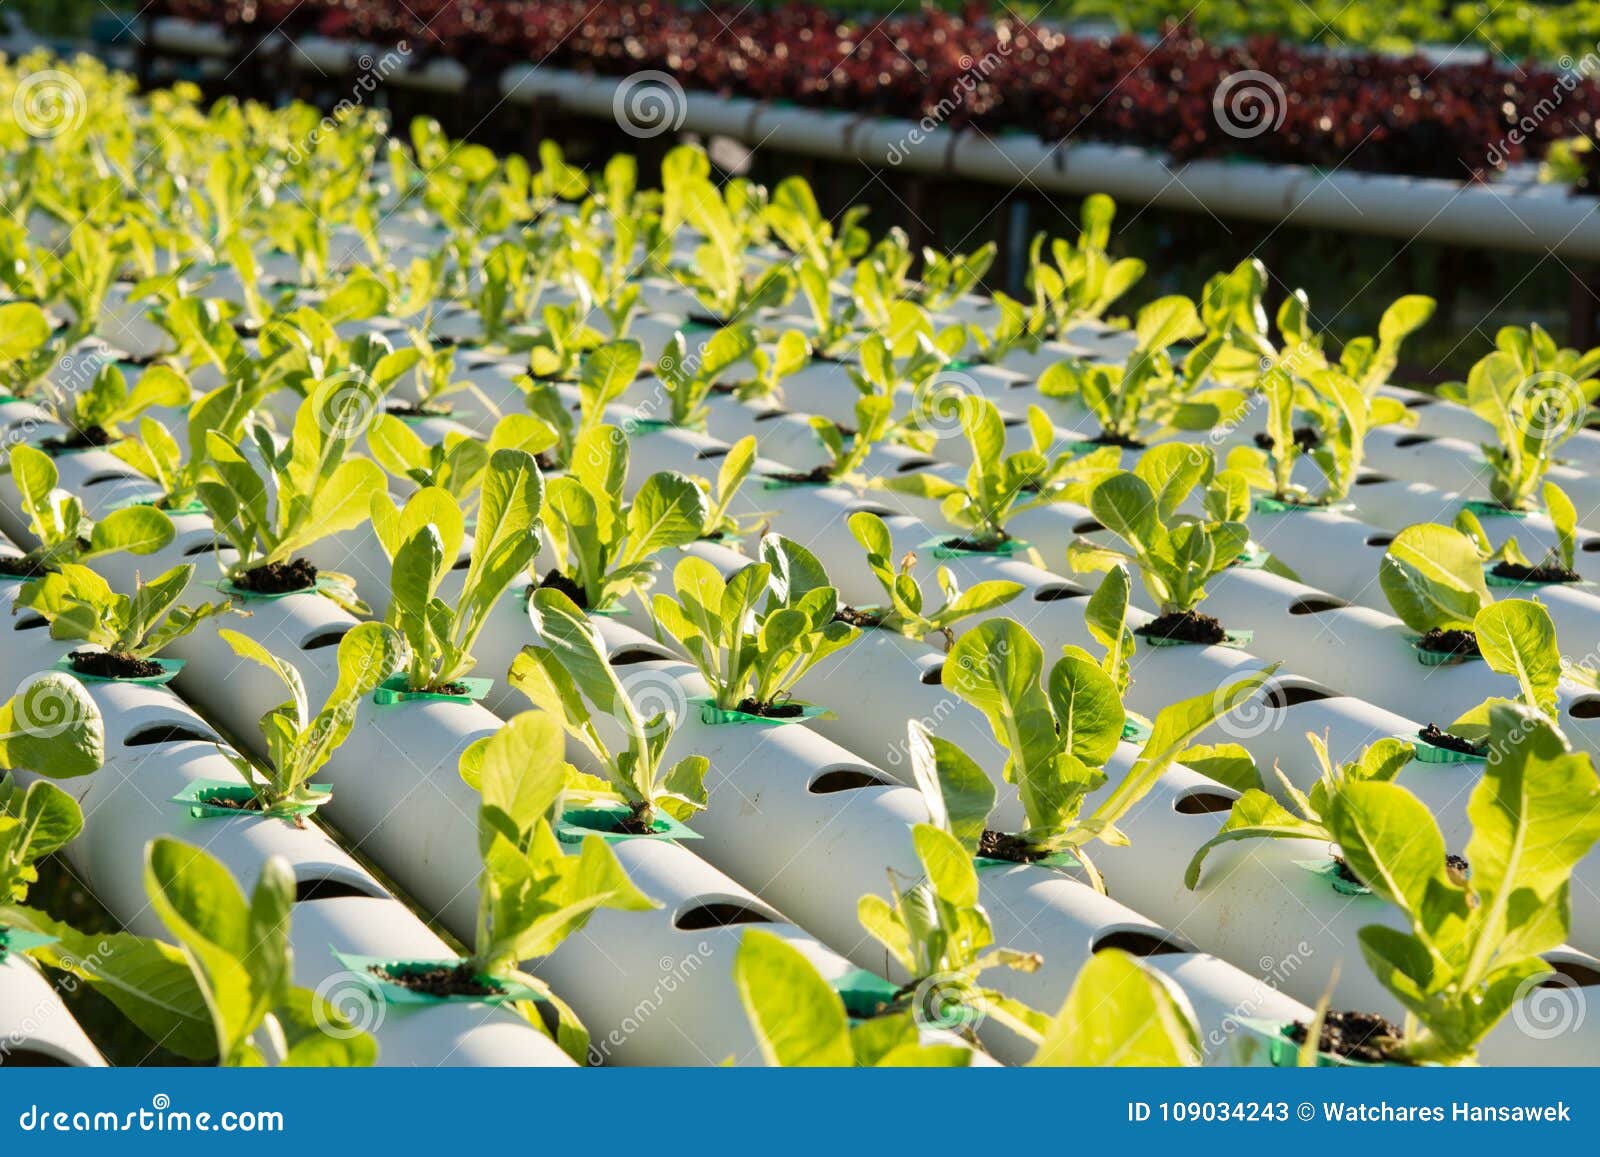 水栽法有机水耕的菜在耕种农场库存图片 图片包括有水栽法有机水耕的菜在耕种农场